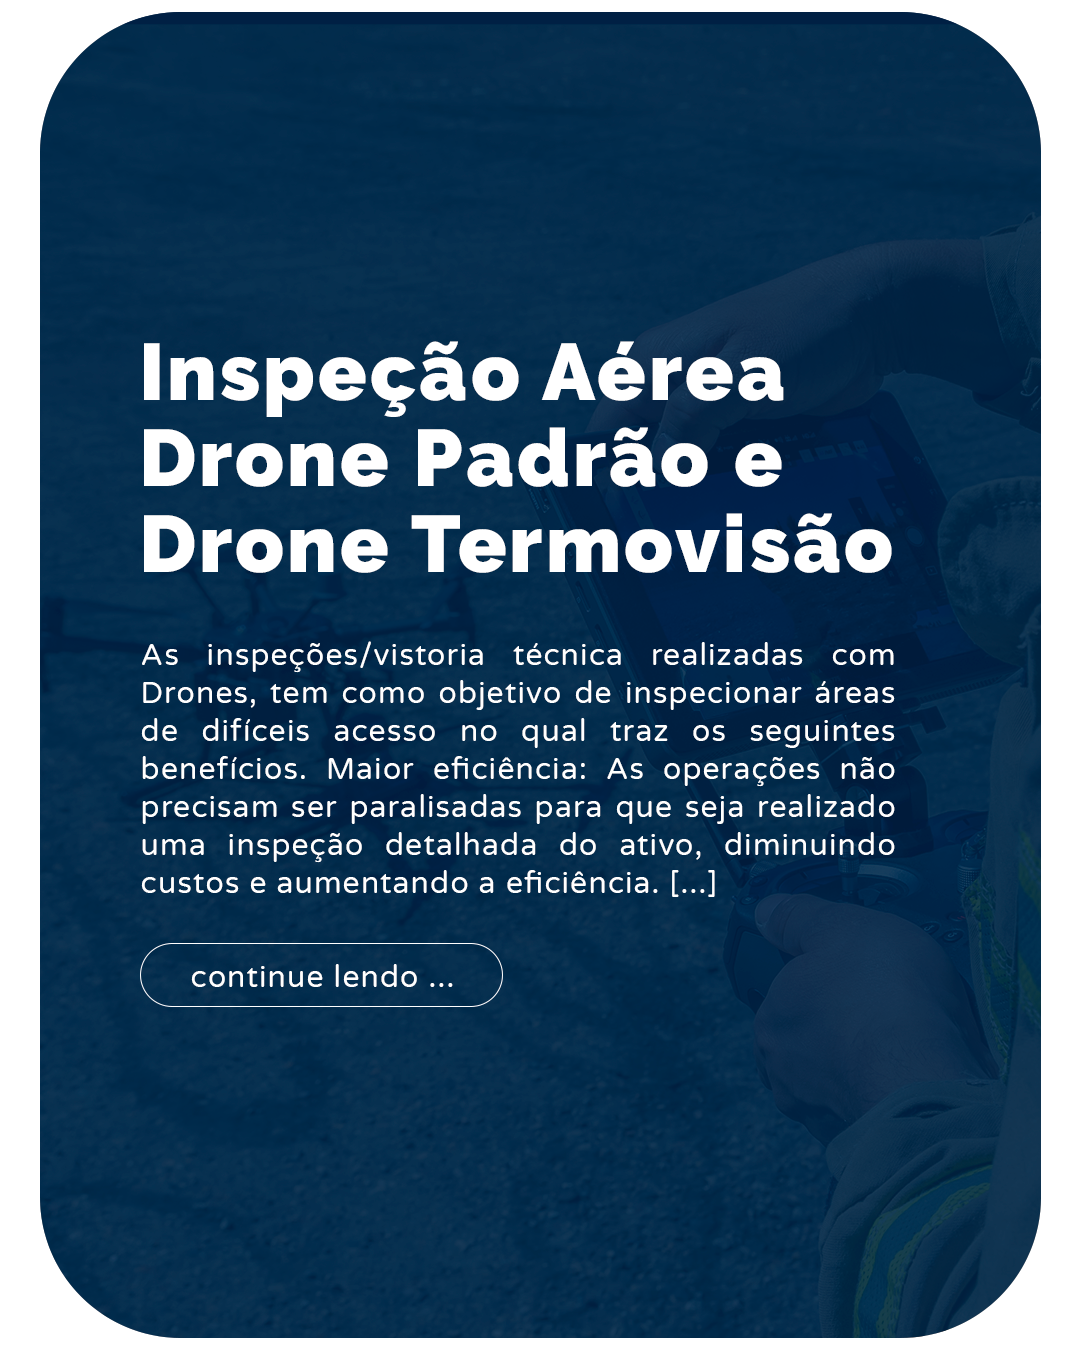 inspeção aérea drone padrão e drone termovisão